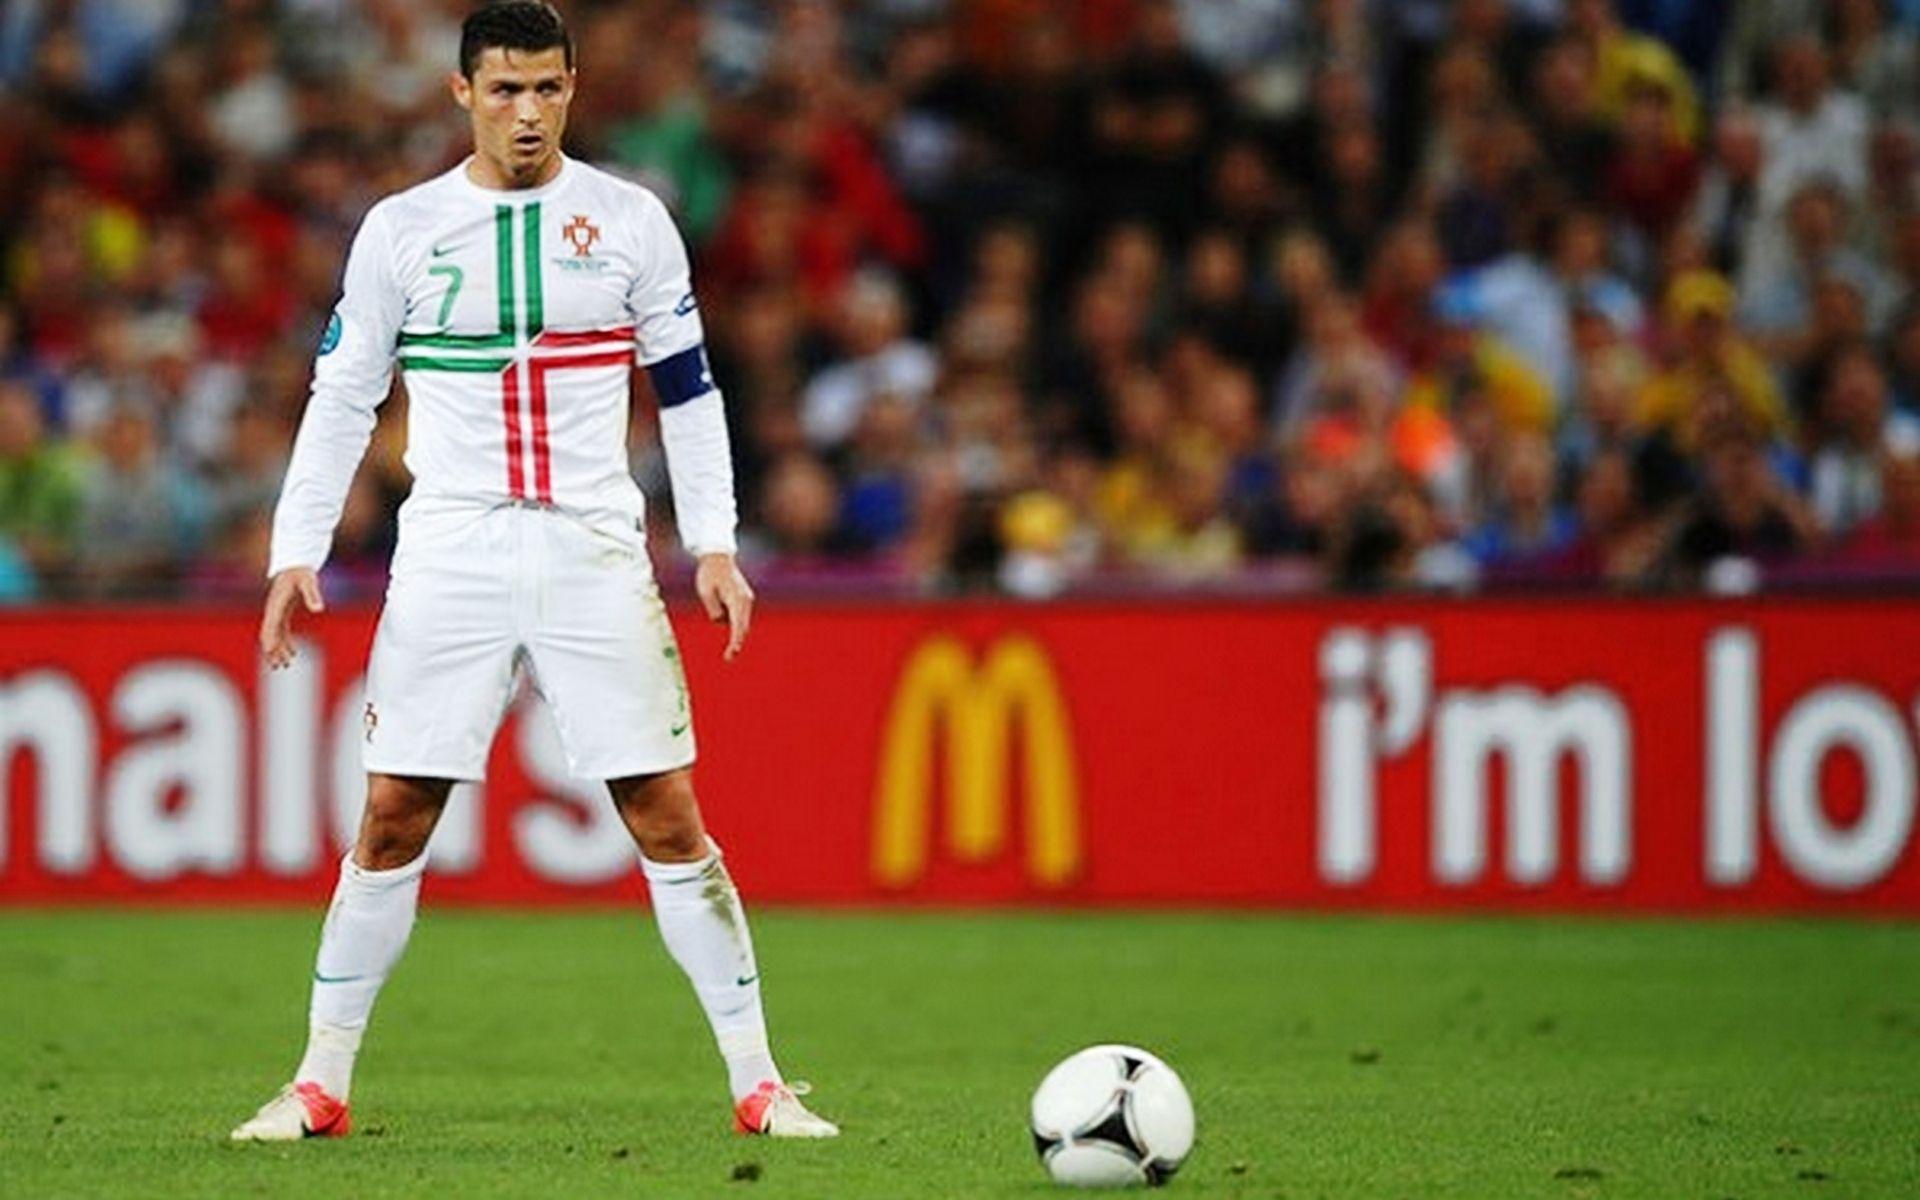 Ronaldo Free Kick Stance Wallpaper